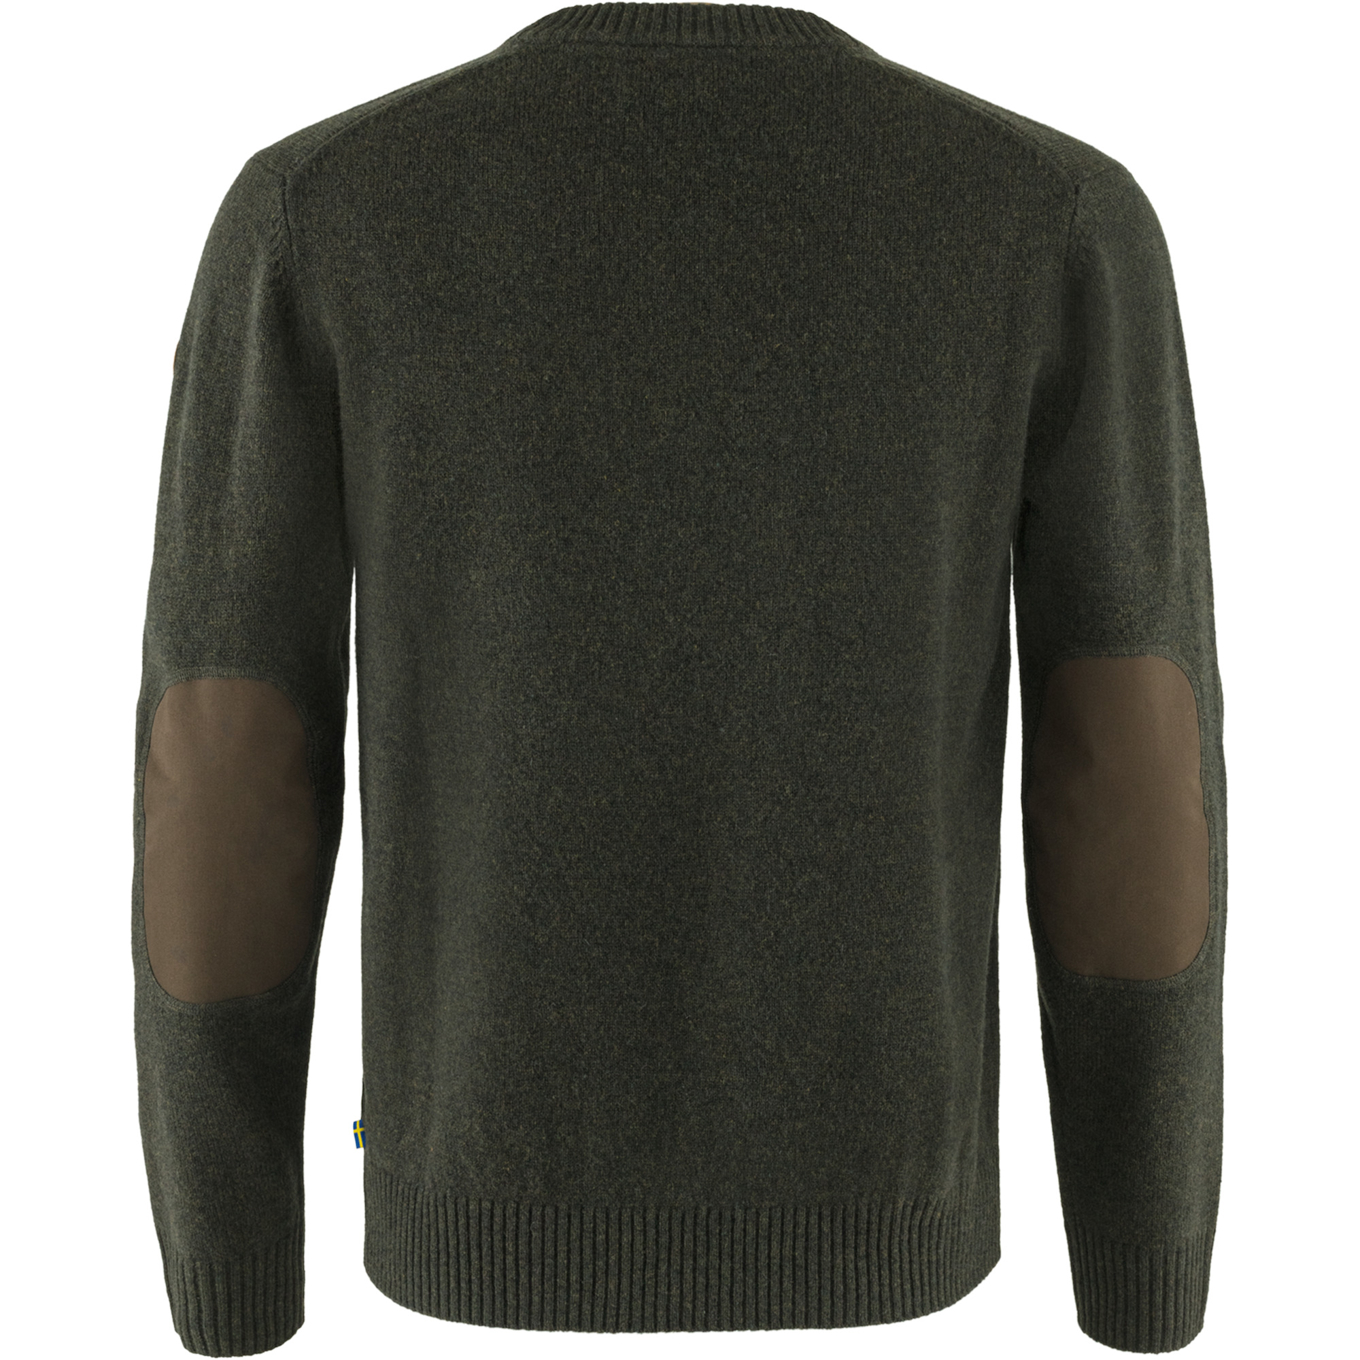 Fjallraven Ovik Round-Neck Sweater - Men's Dark Grey, L